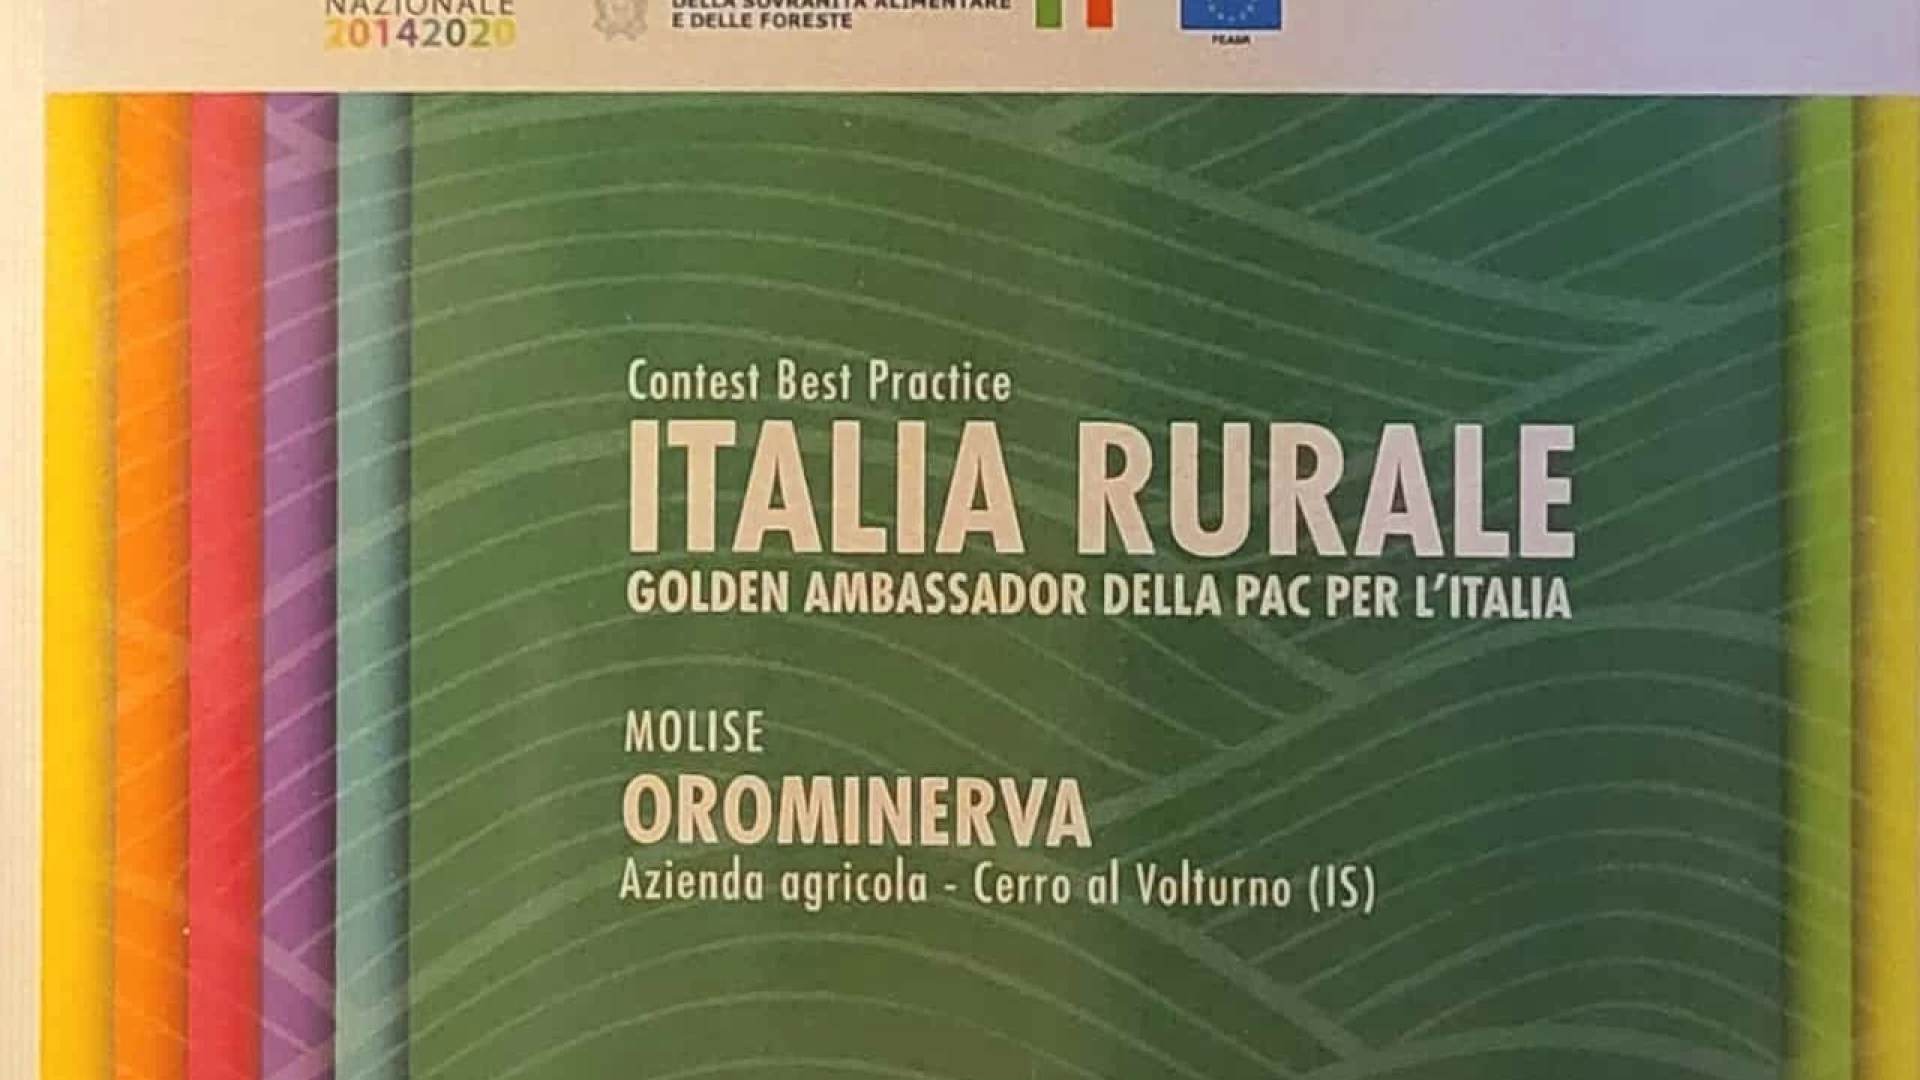 Psr 2014-2022: Premio “Best Practice dell’Italia Rurale”. La rete rurale nazionale premia l’azienda molisana di Cerro al Volturno “Orominerva”.